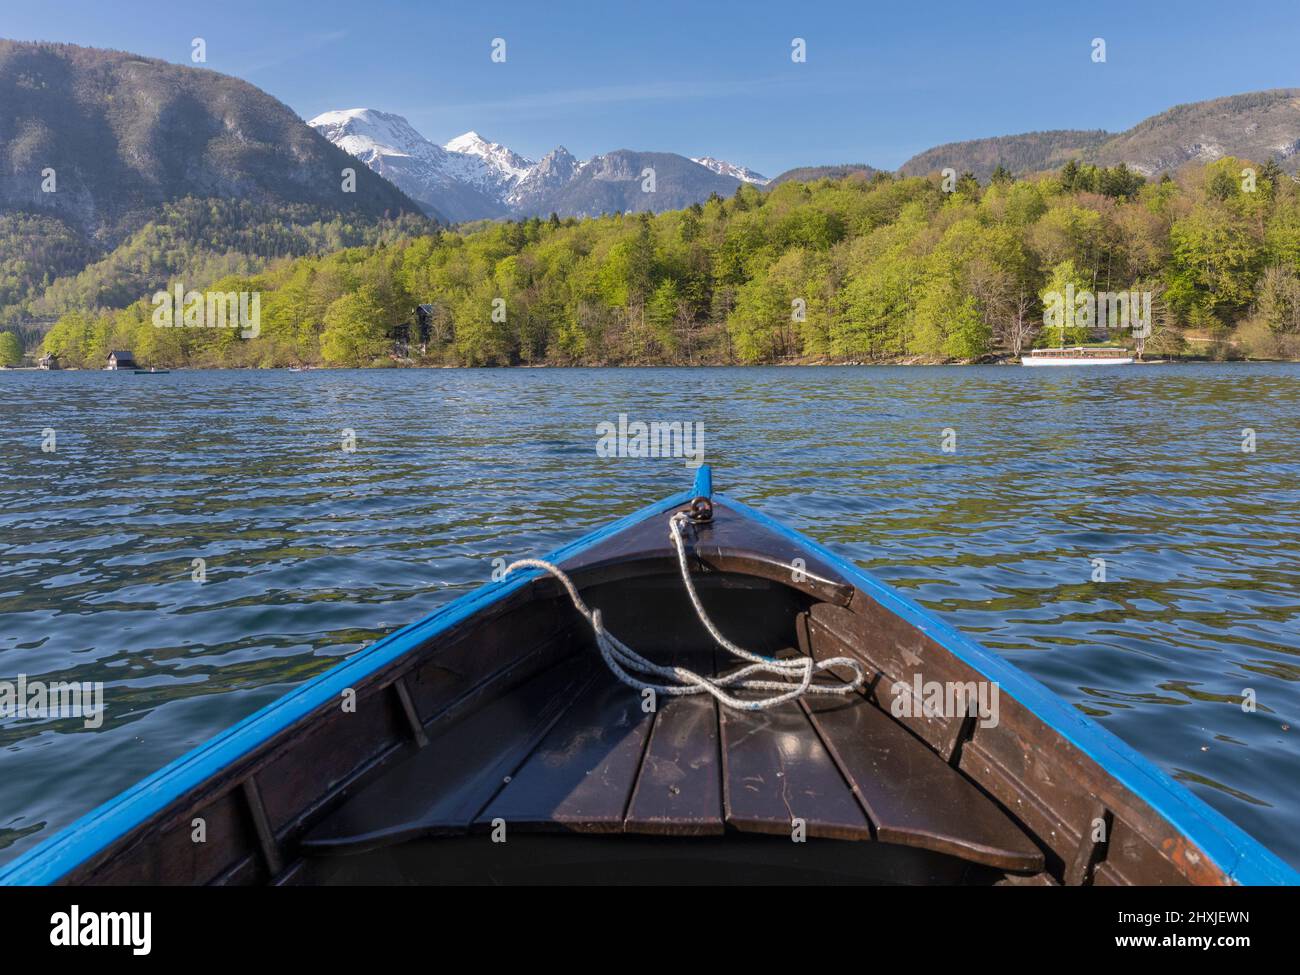 Lac de Bohinj (Bohinjsko jezero), Parc national de Triglav, haute-Carniola, Slovénie. Arc de bateau à ramer. Alpes Juliennes en arrière-plan. Banque D'Images